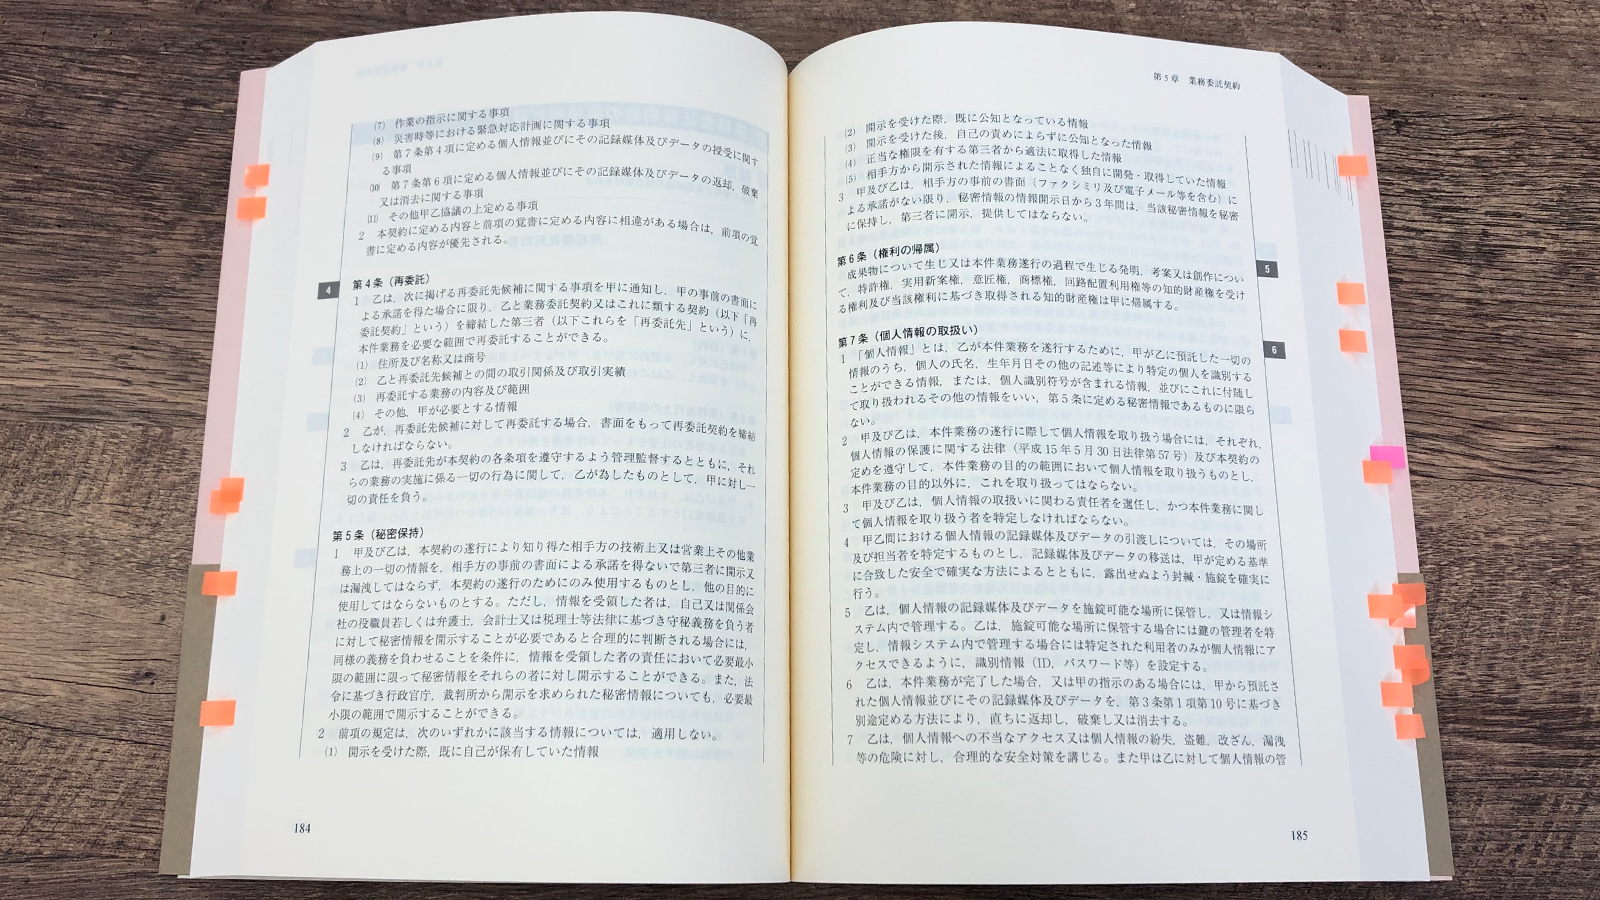 阿部・井窪・片山法律事務所『契約書作成の実務と書式 第2版』P184-185